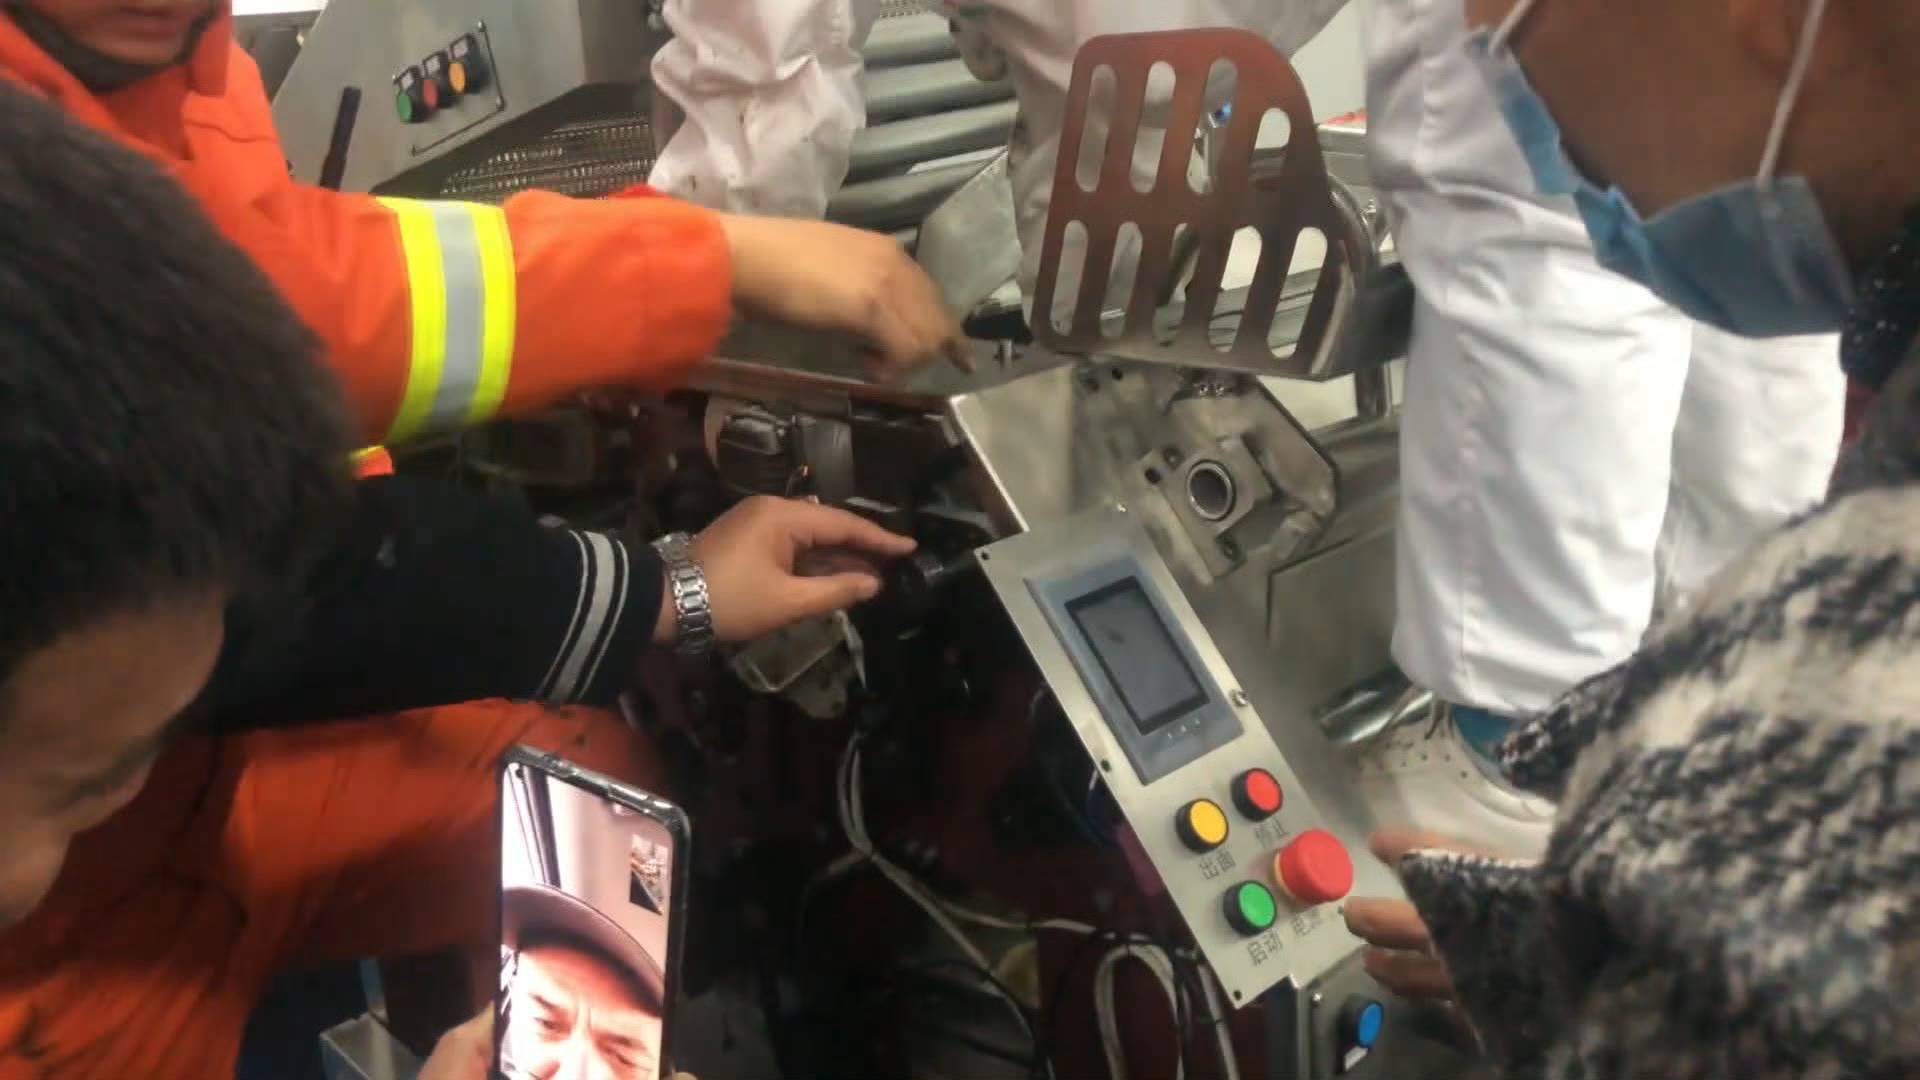 45秒丨工人手卡面食生产设备 消防视频连线厂家急救援